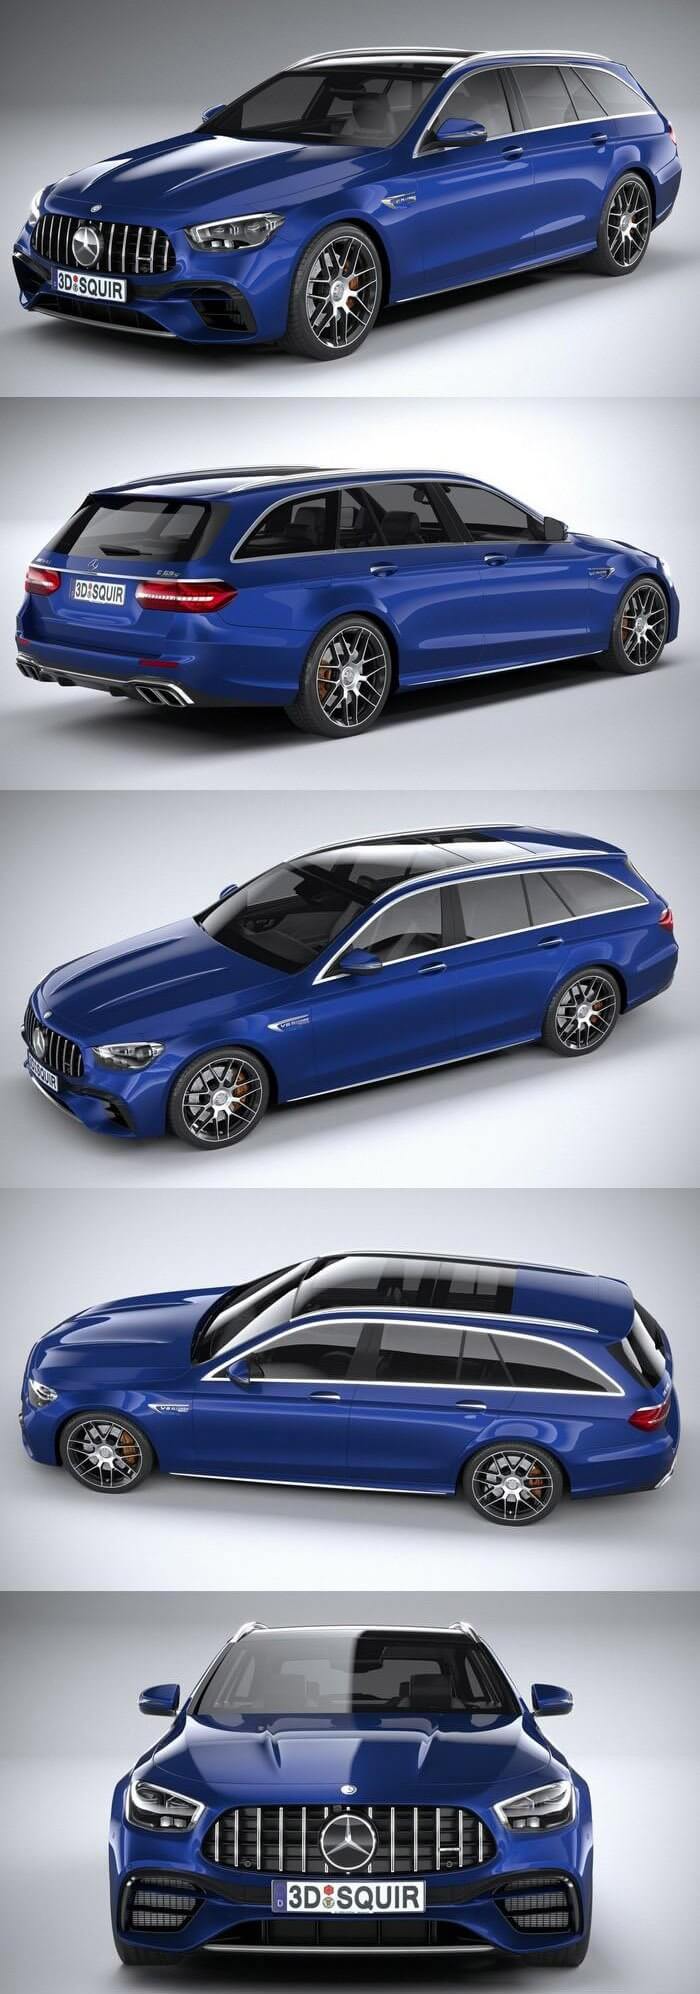 梅赛德斯奔驰 E63 Estate AMG 2021 汽车轿车旅行车3D模型下载 (C4D,FBX,OBJ,MAX)